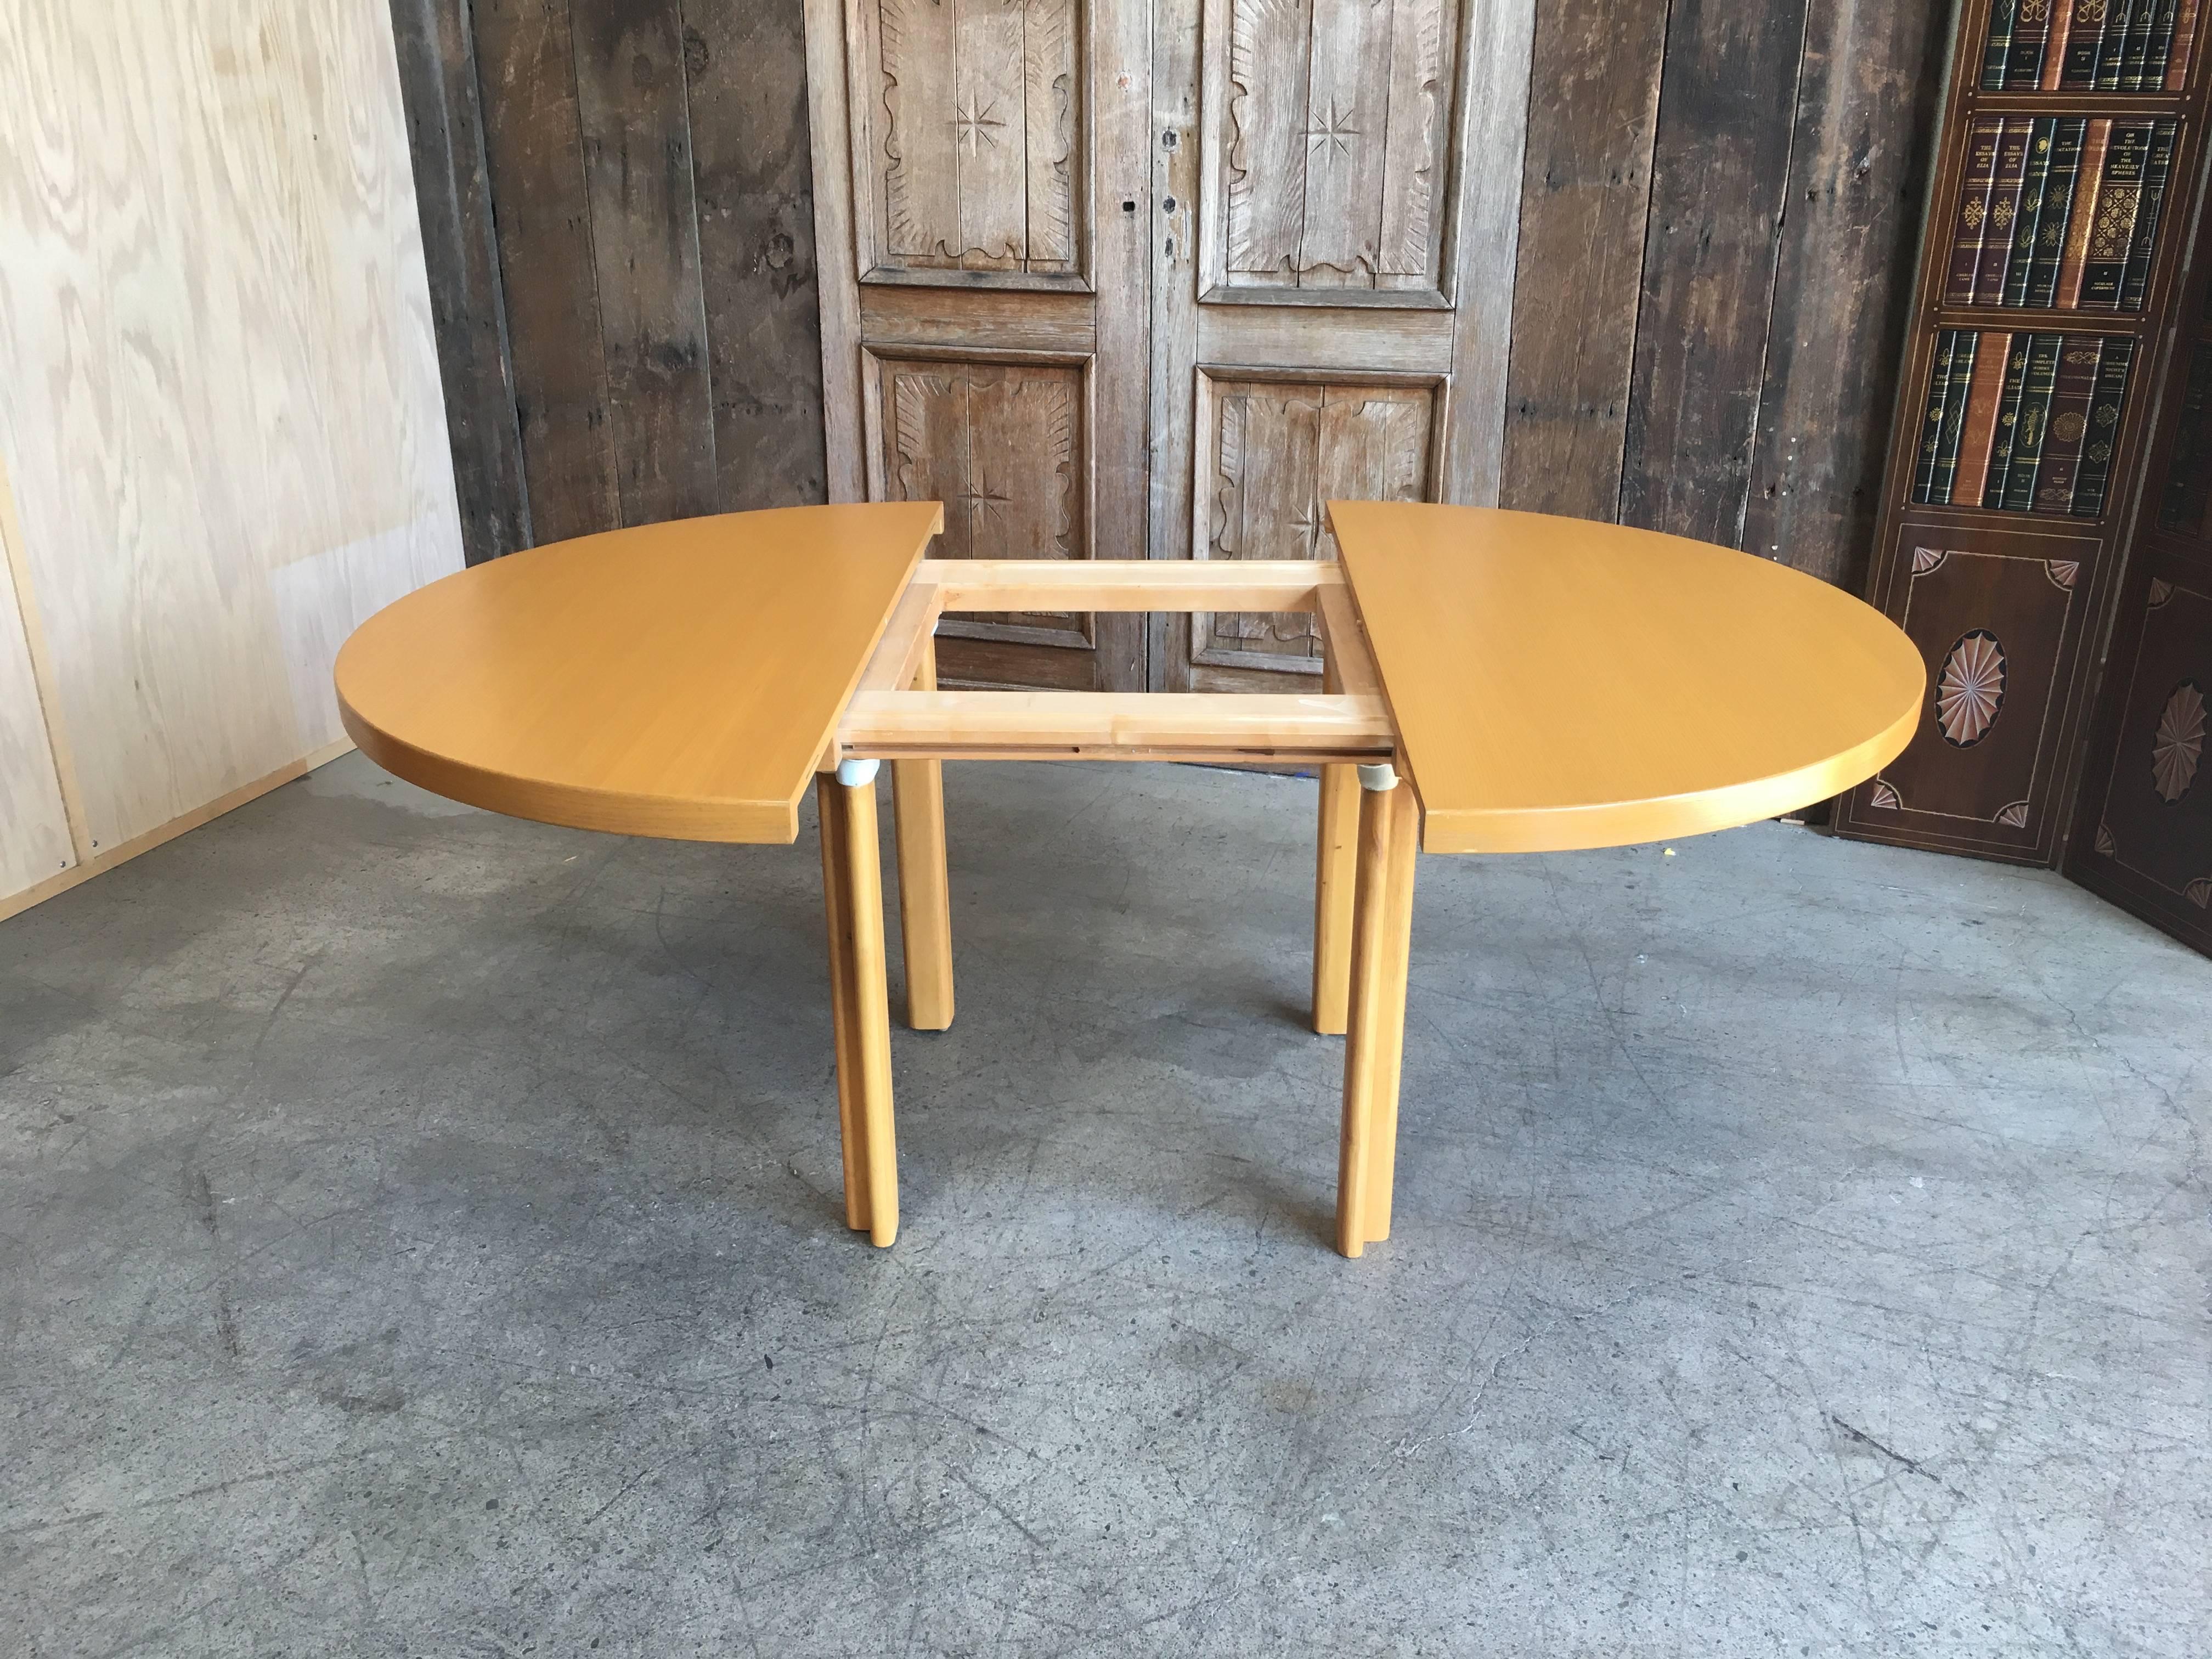 Finnish Alvar Aalto Dining Table